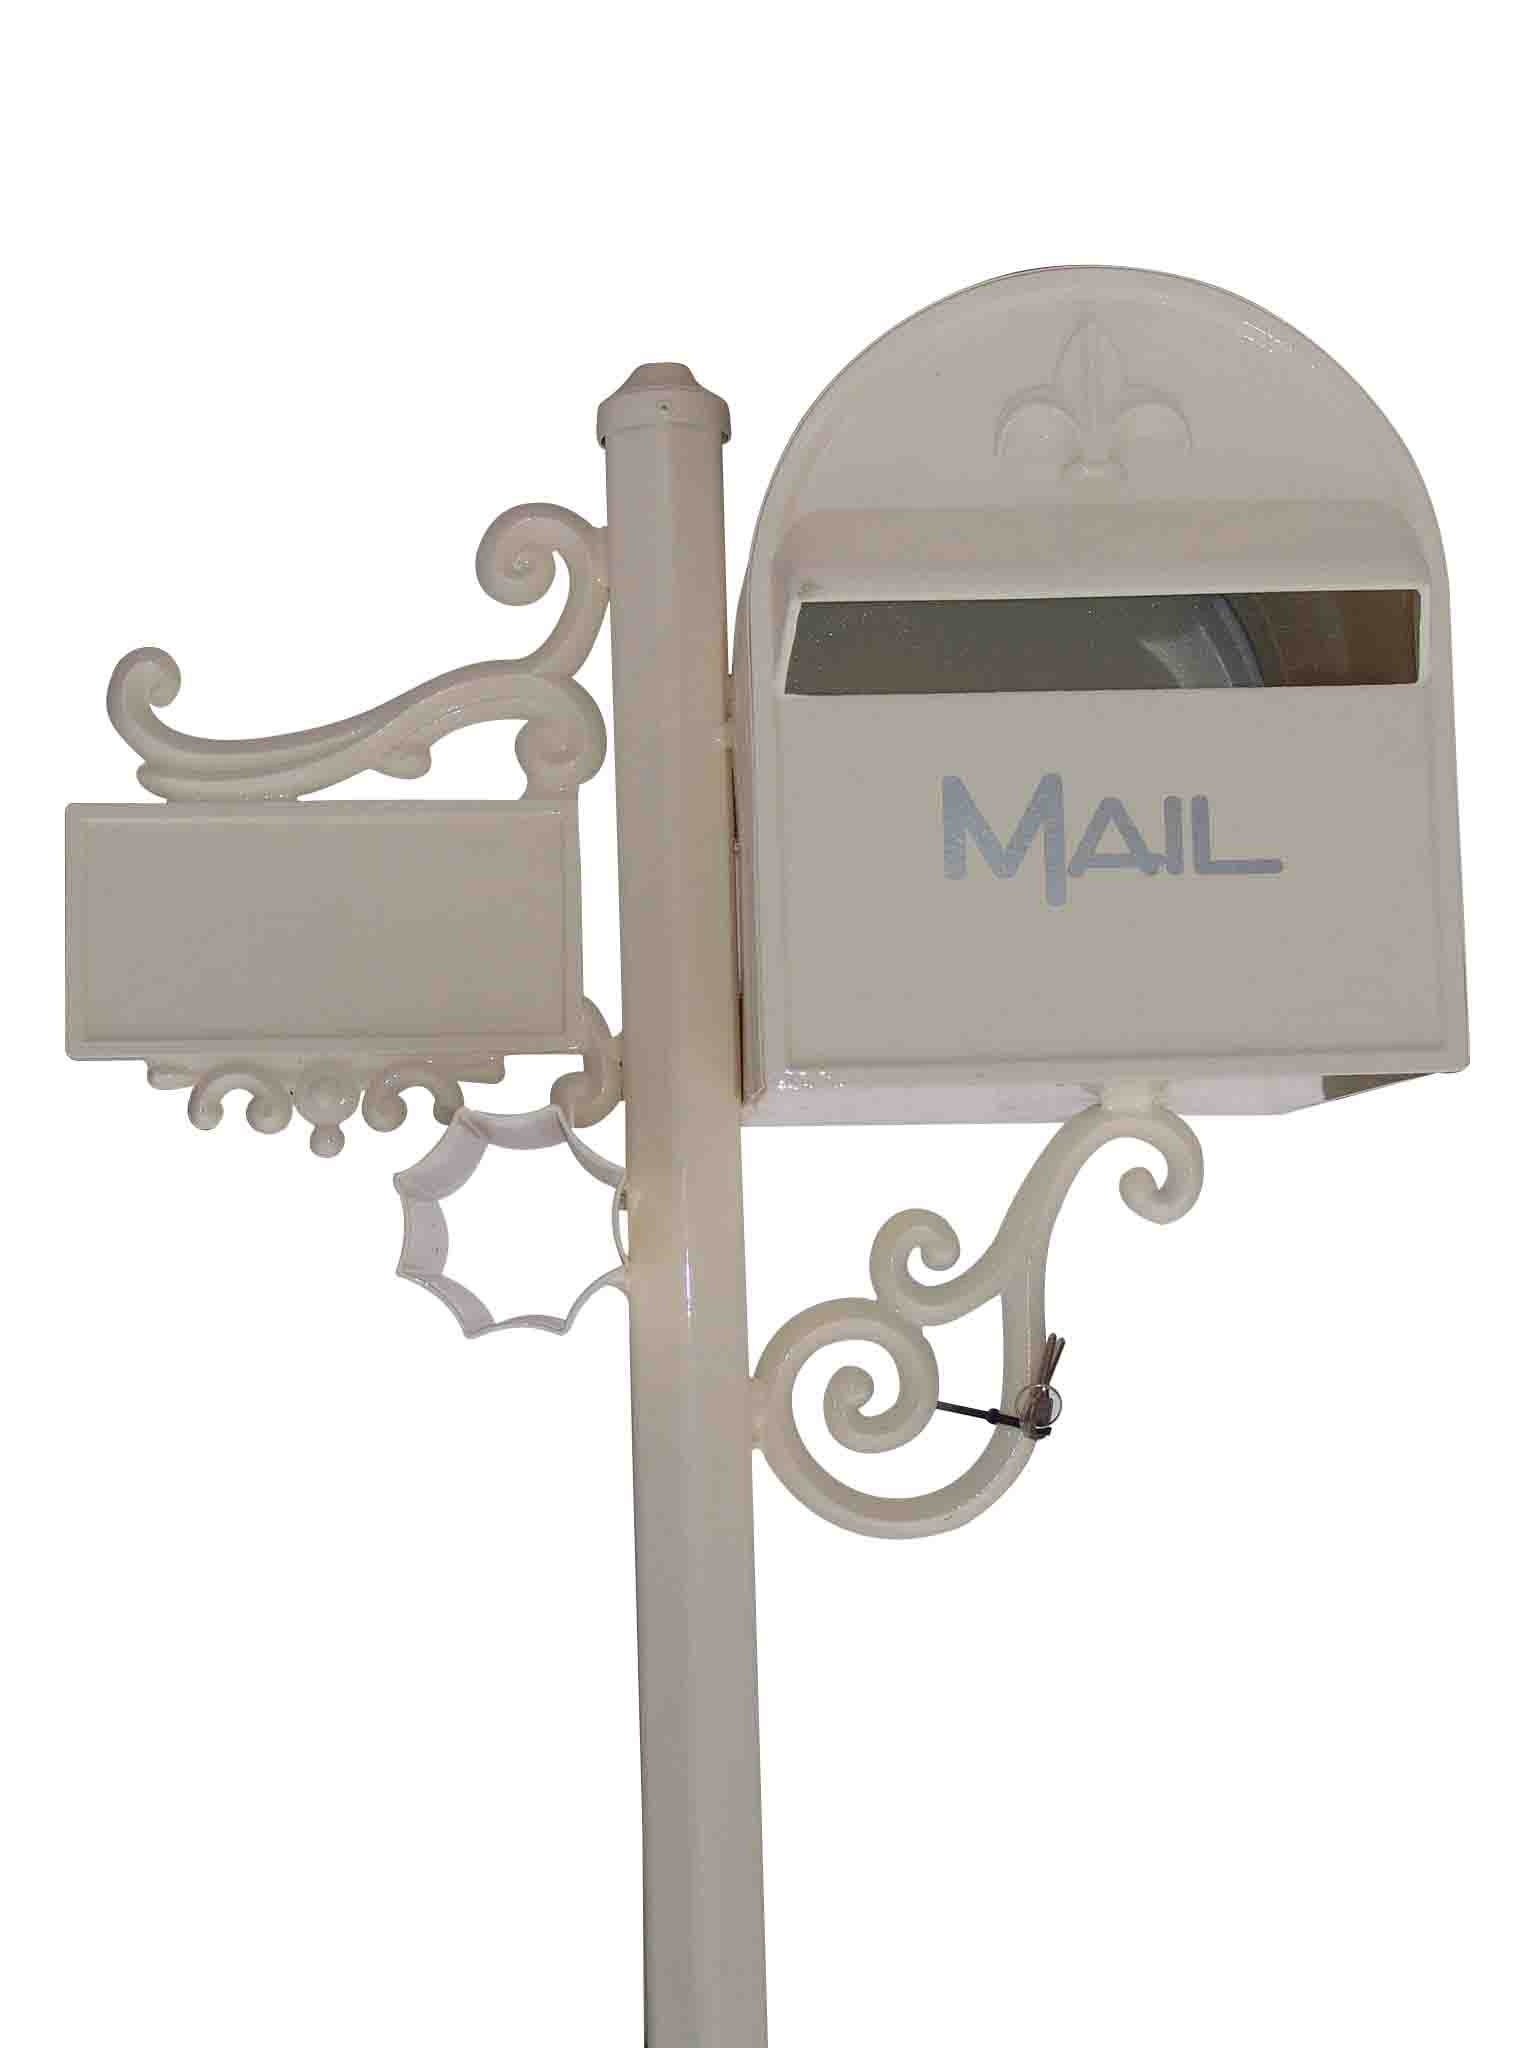  Mail Box